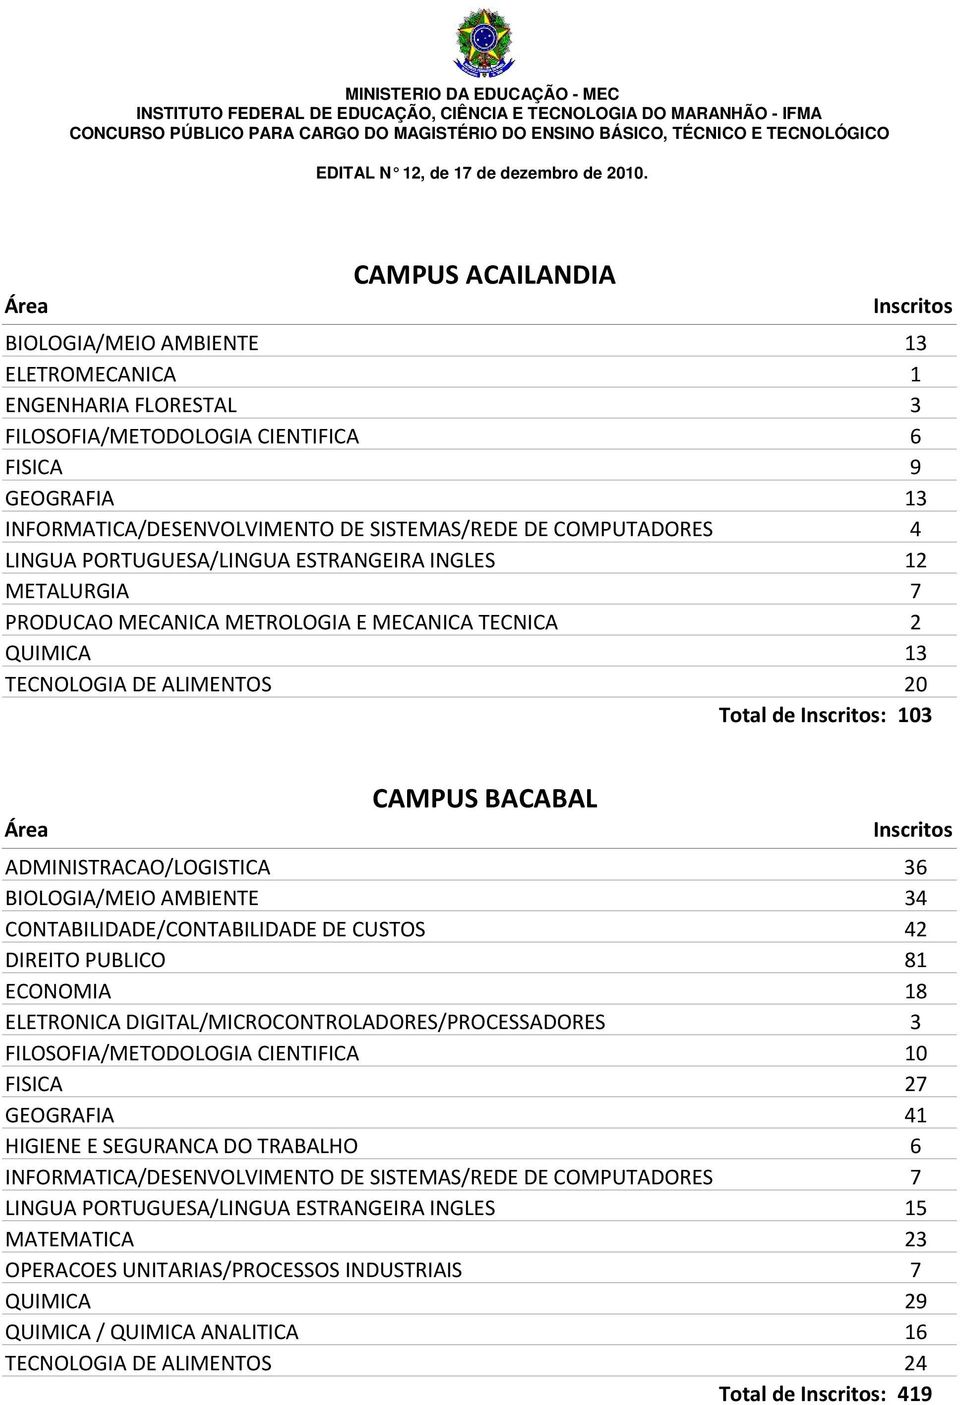 ADMINISTRACAO/LOGISTICA 36 BIOLOGIA/MEIO AMBIENTE 34 CONTABILIDADE/CONTABILIDADE DE CUSTOS 42 DIREITO PUBLICO 81 ECONOMIA 18 ELETRONICA DIGITAL/MICROCONTROLADORES/PROCESSADORES 3